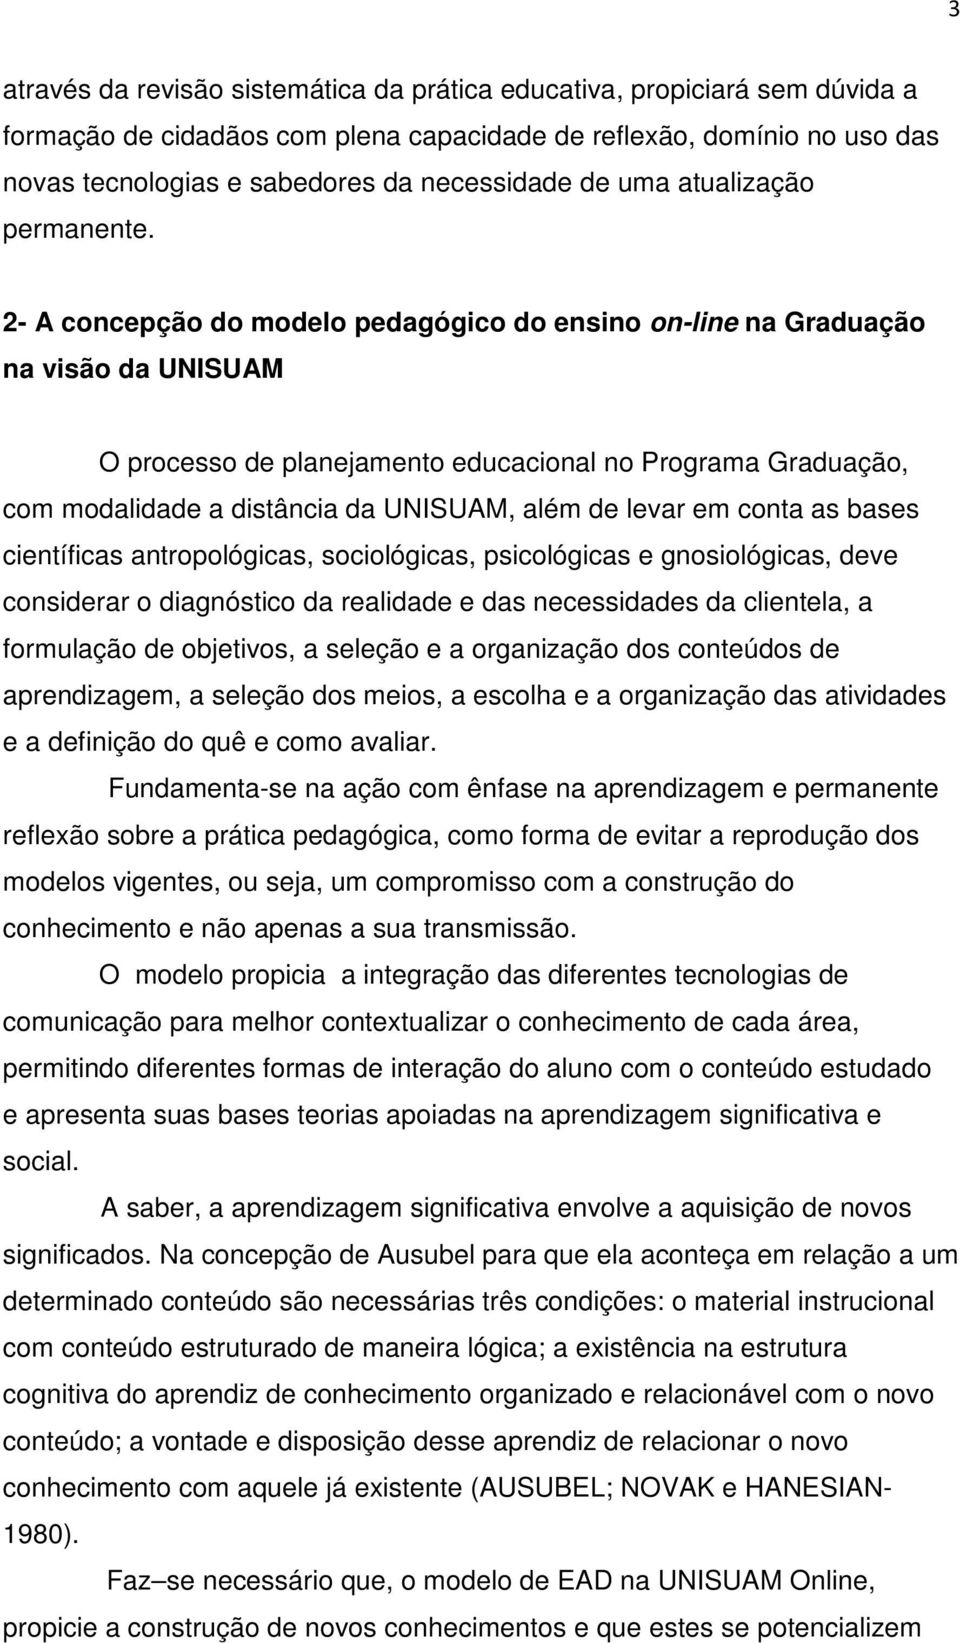 2- A concepção do modelo pedagógico do ensino on-line na Graduação na visão da UNISUAM O processo de planejamento educacional no Programa Graduação, com modalidade a distância da UNISUAM, além de